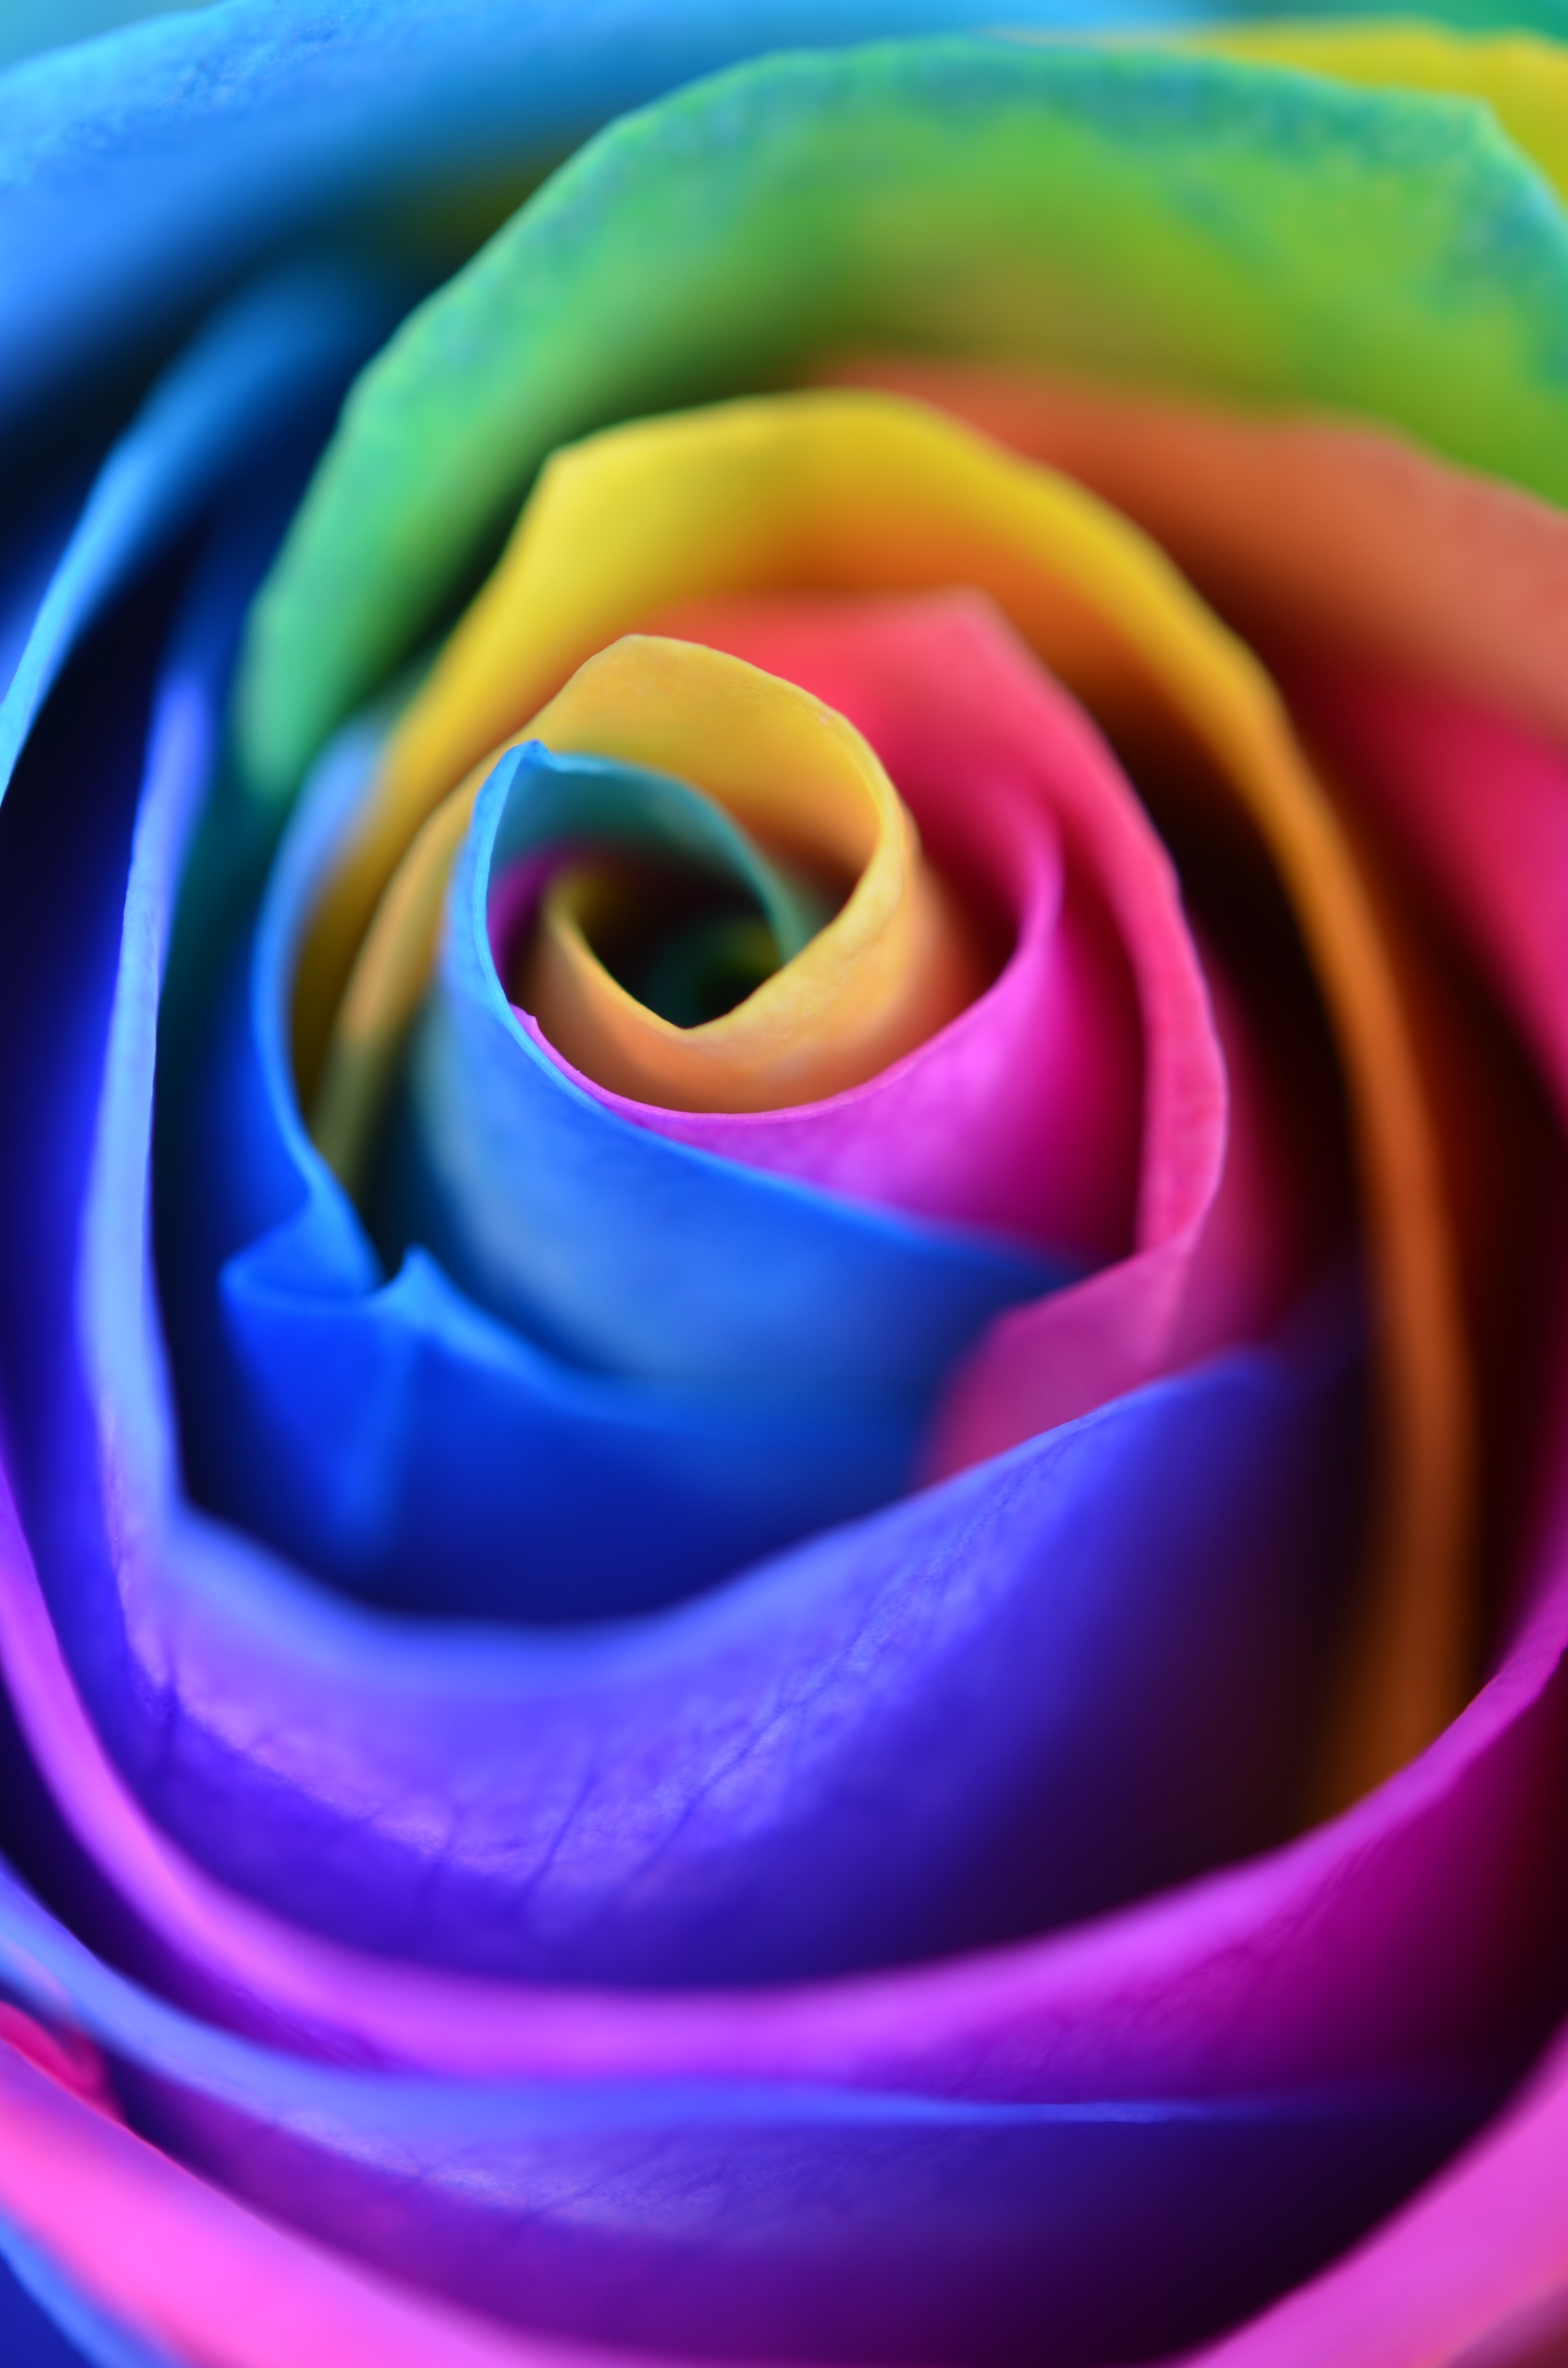 Скачать обои бесплатно Лепестки, Разноцветный, Роза, Макро, Цветок картинка на рабочий стол ПК